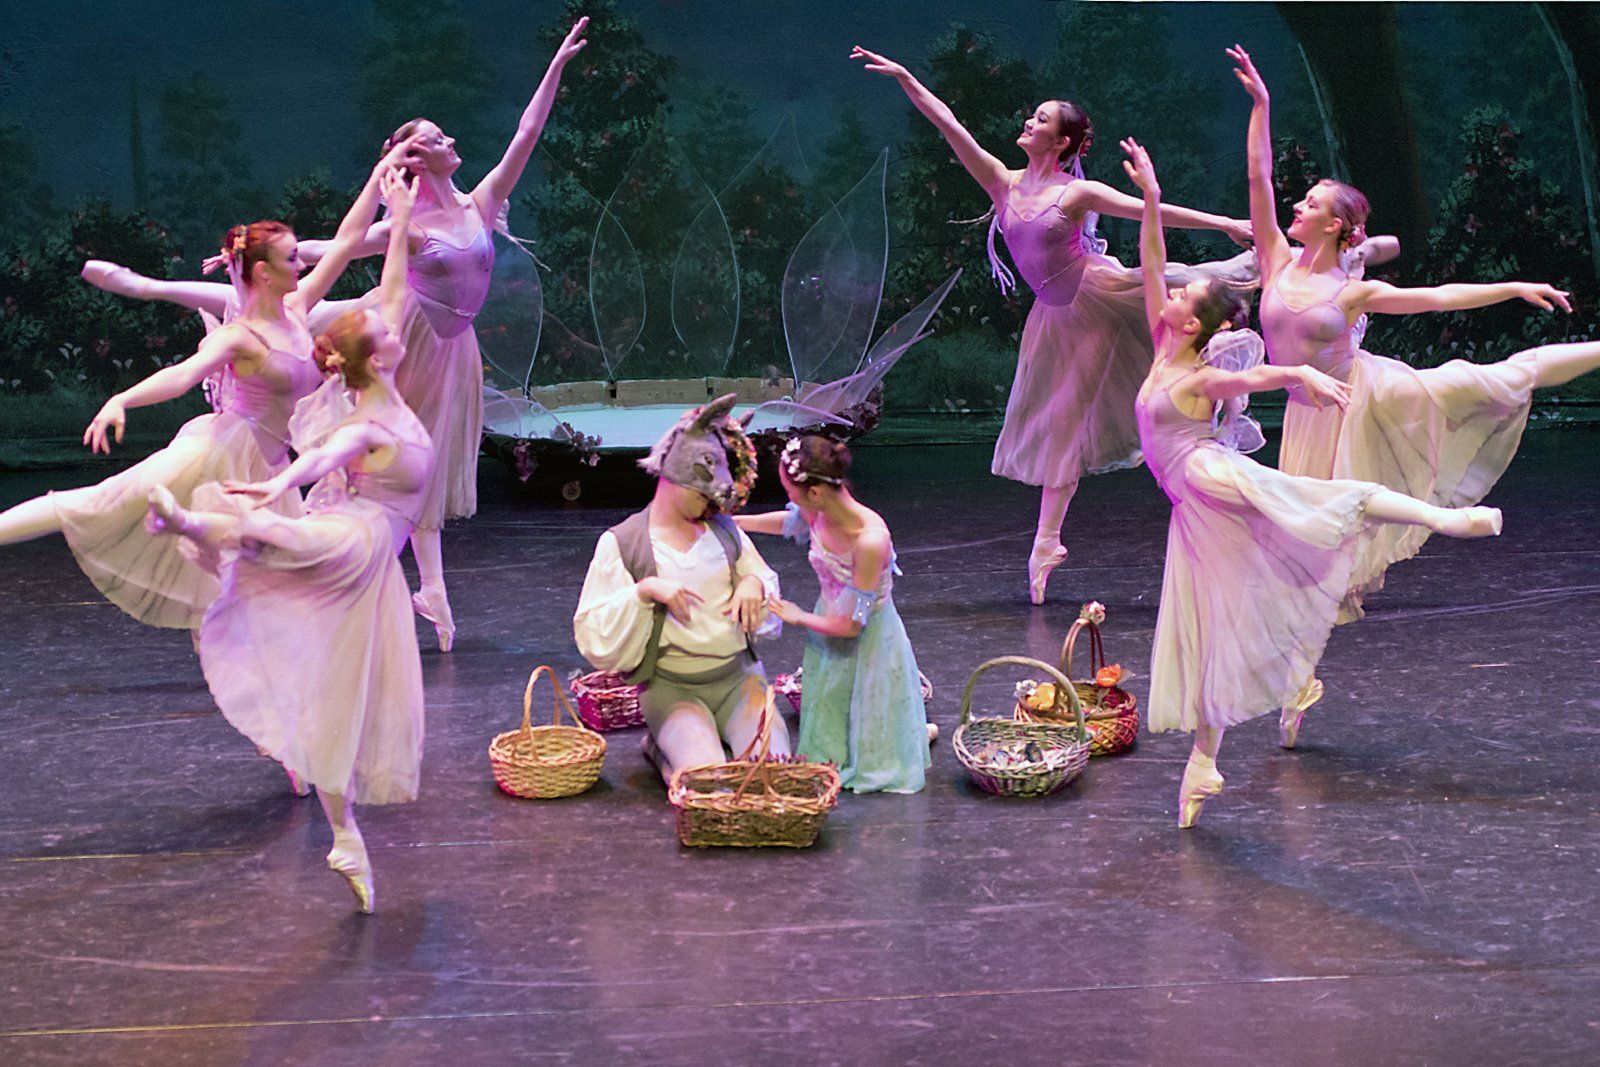 A Midsummer's Night Dream Ballet by Atlantic City Ballet Company